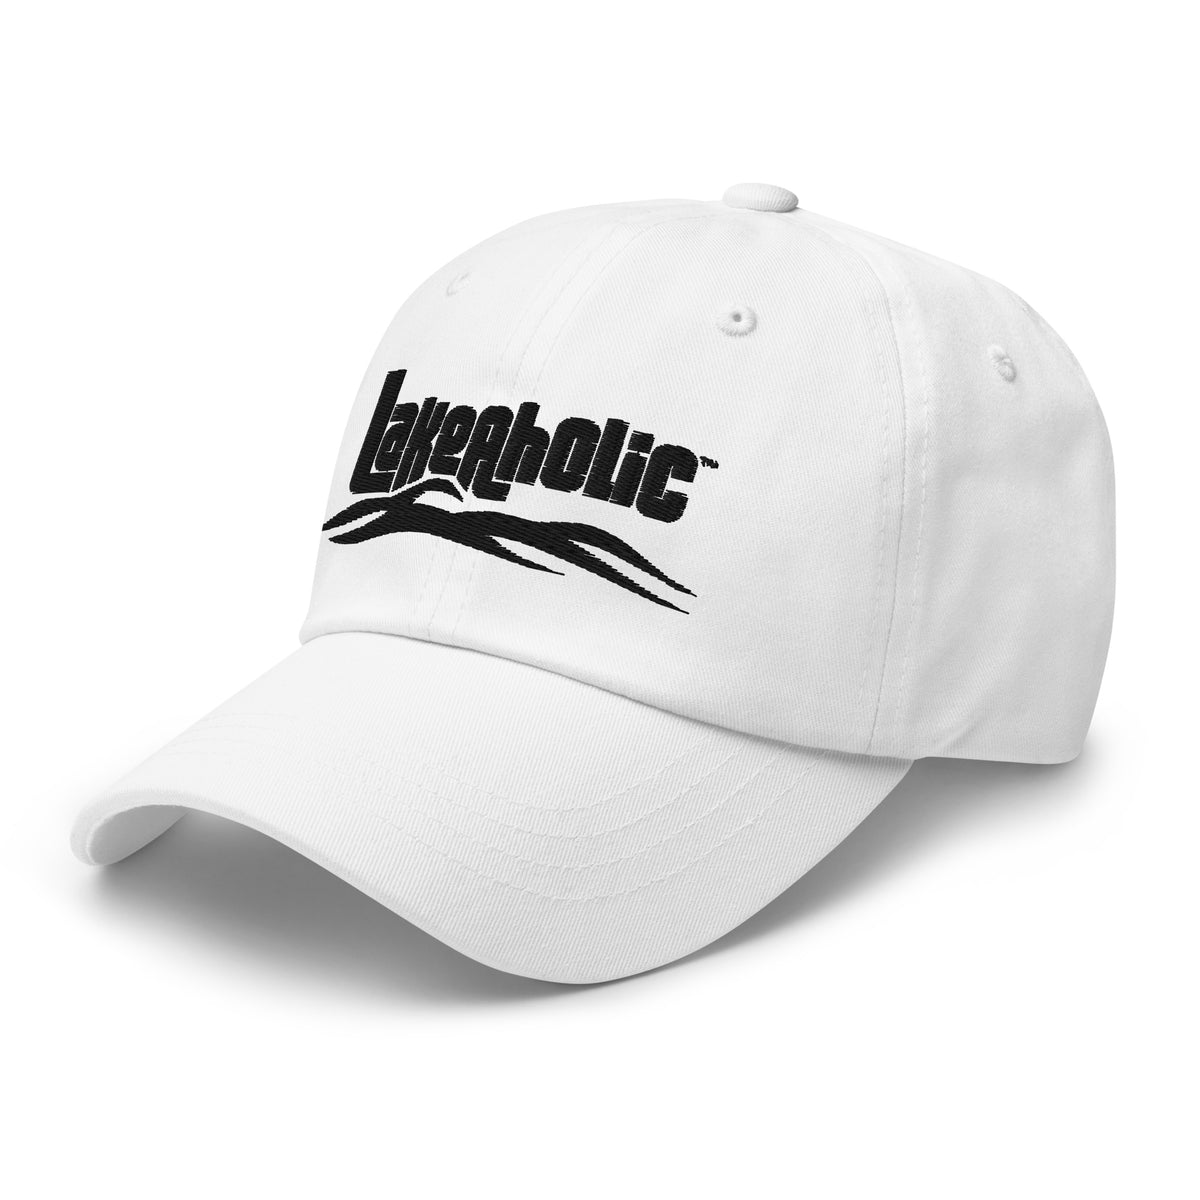 Lakeaholic Dad Hat